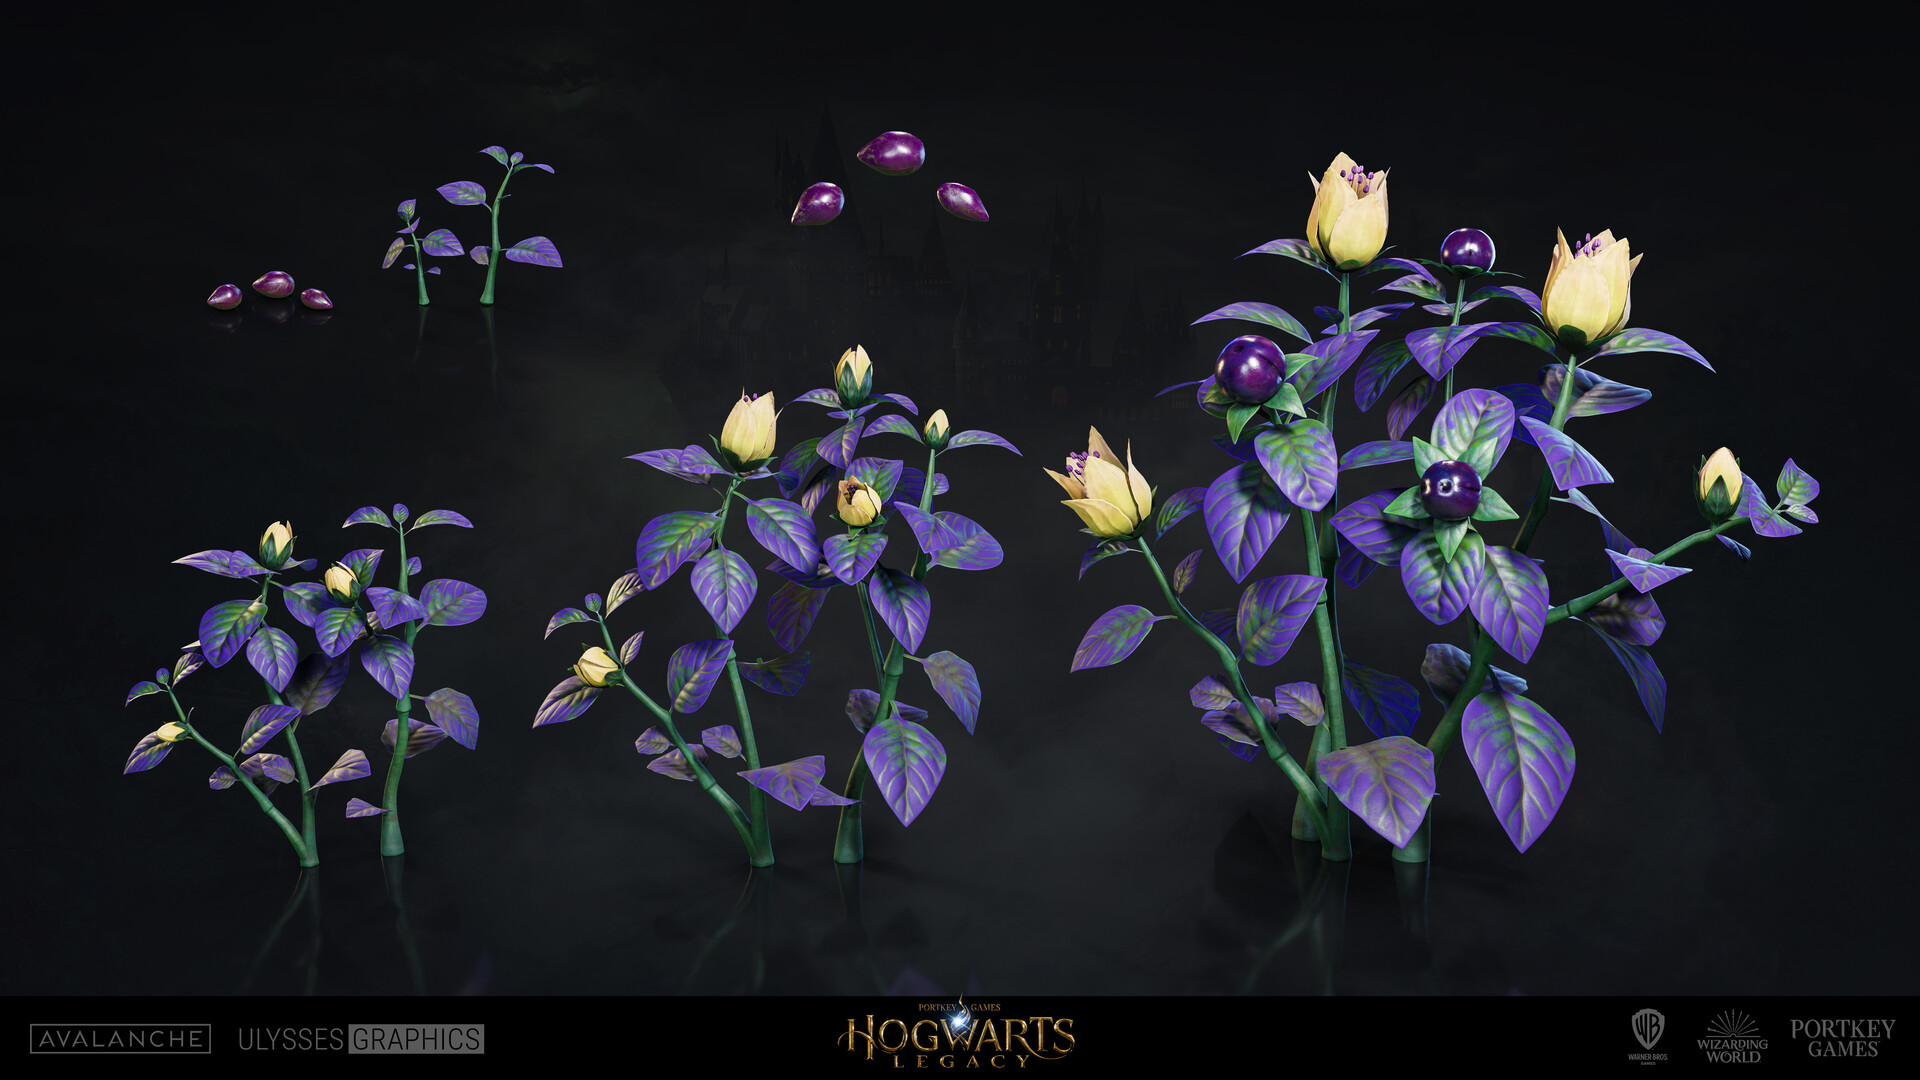 Hogwarts Legacy: Guia de Build Botânica - O poder das plantas